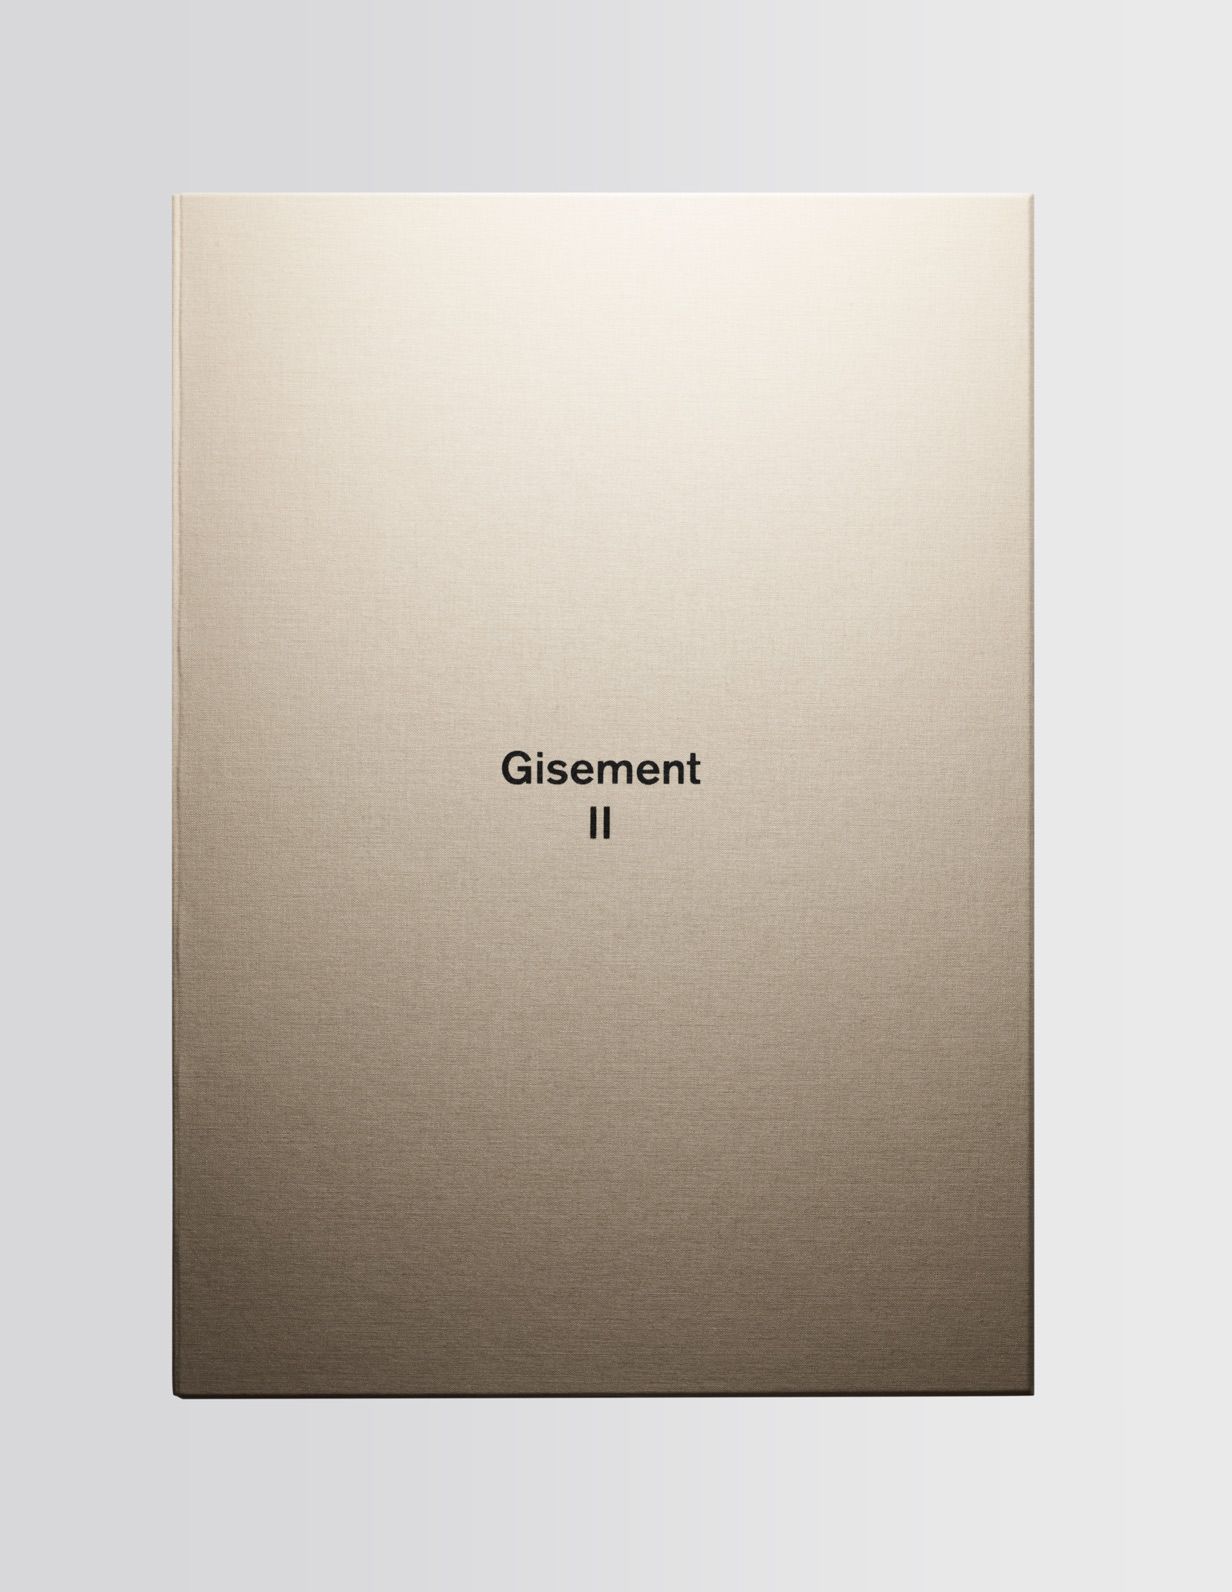 Gisement II